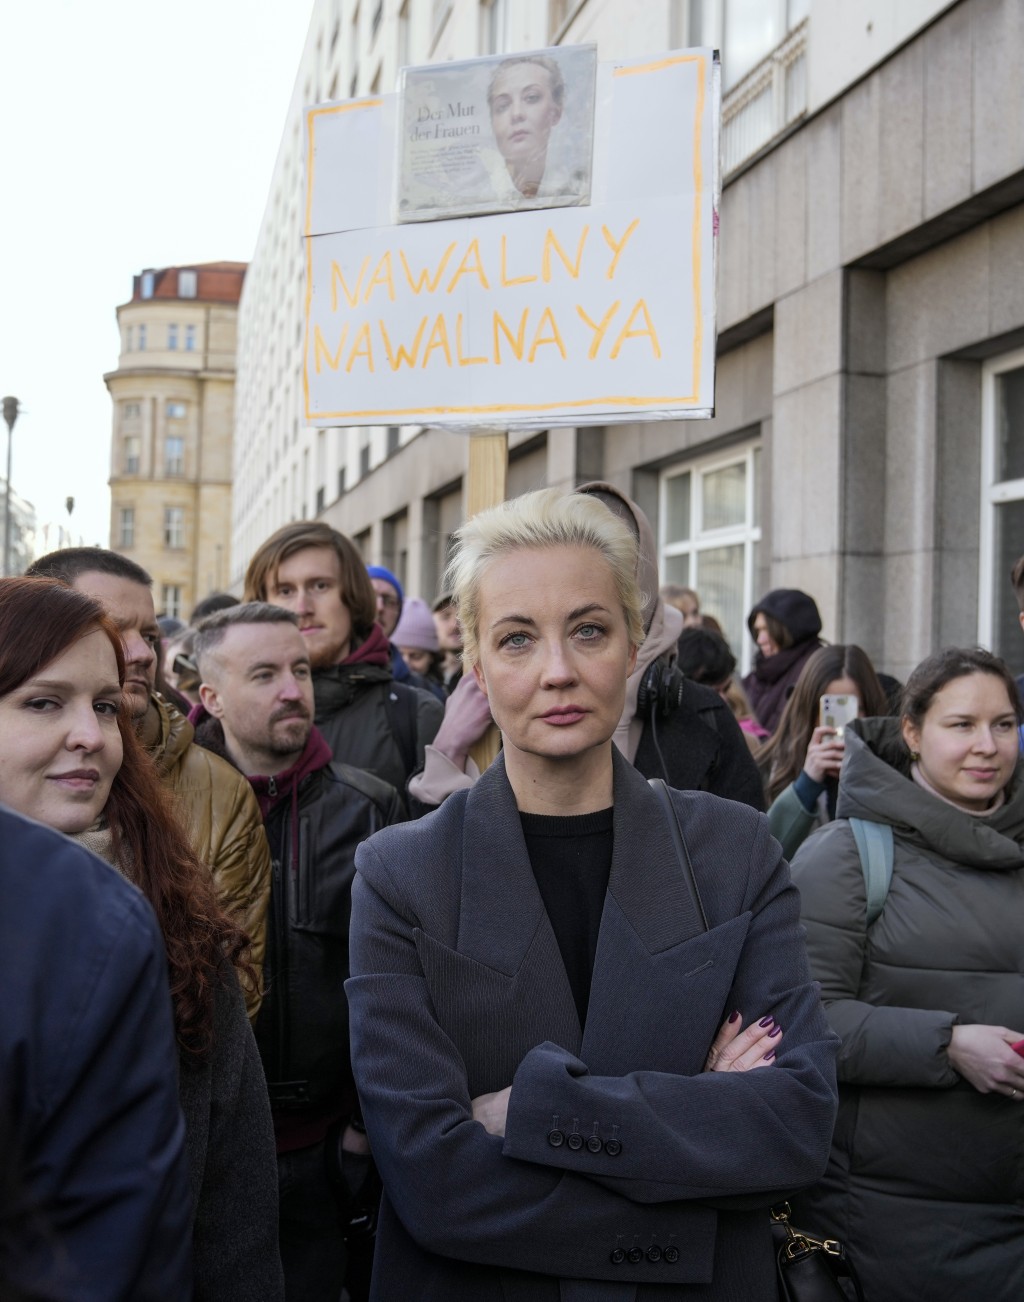 尤莉娅在柏林俄罗斯大使馆外海外票站排了6小时队。美联社